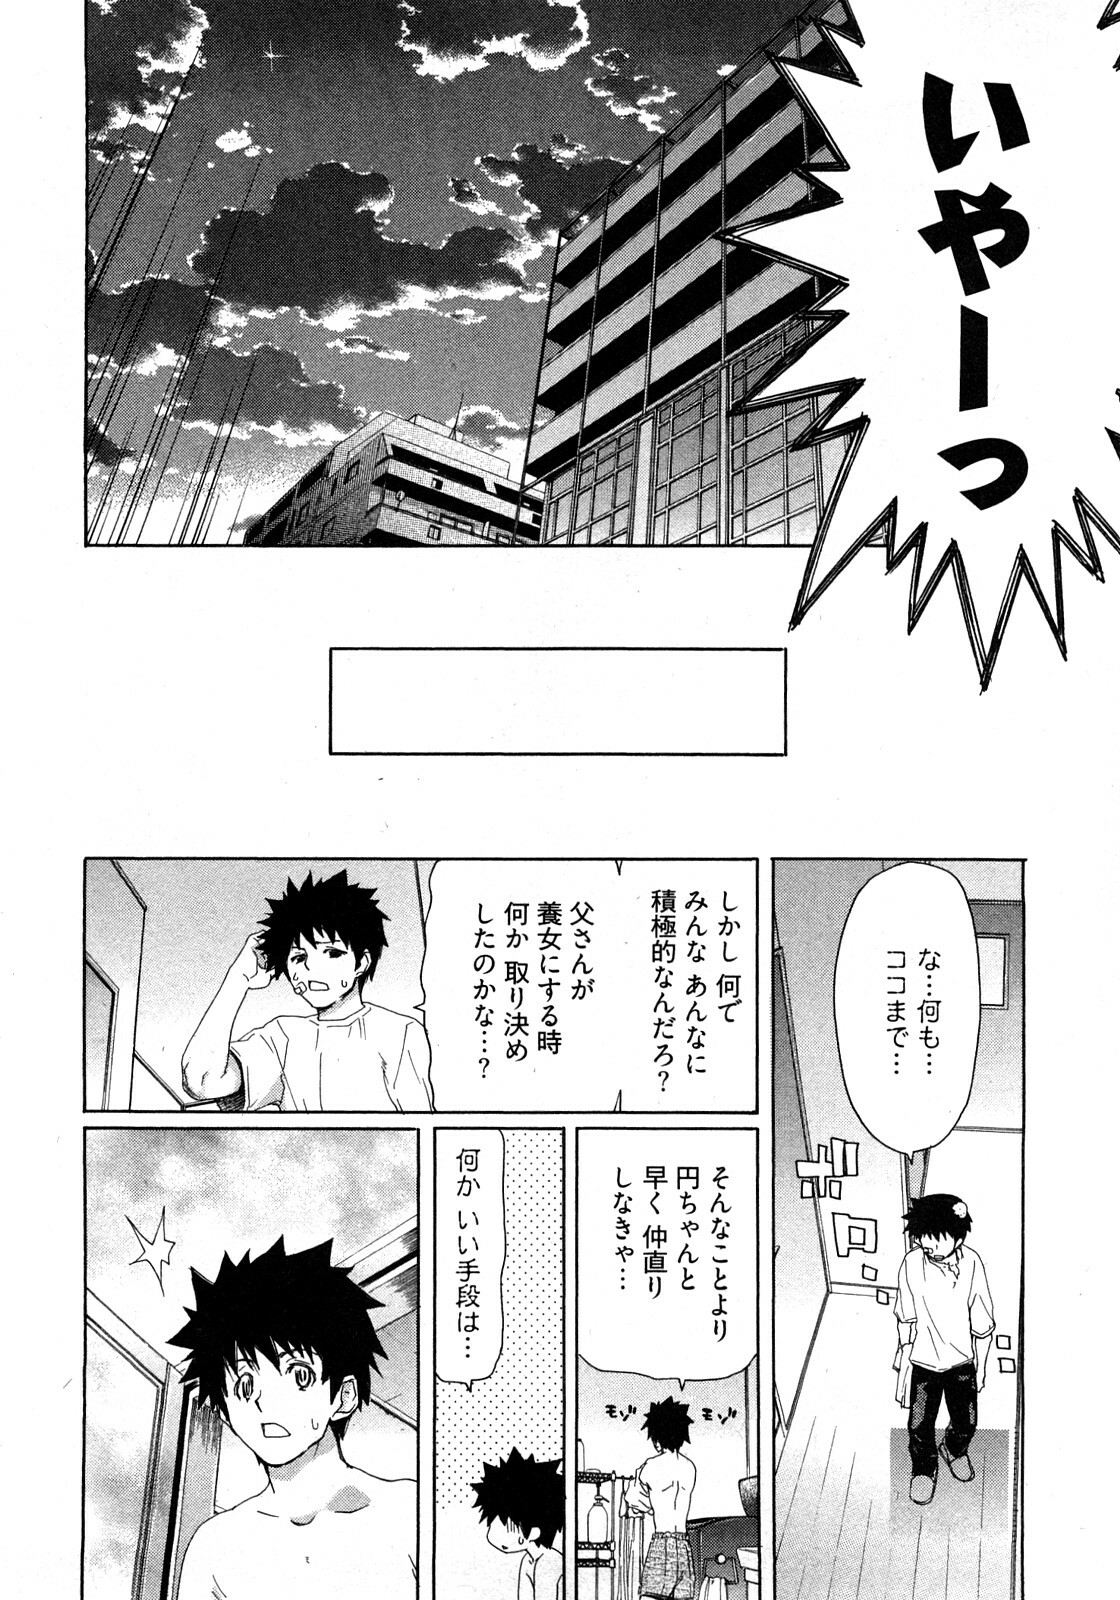 [Hori Hiroaki] My Darling page 33 full